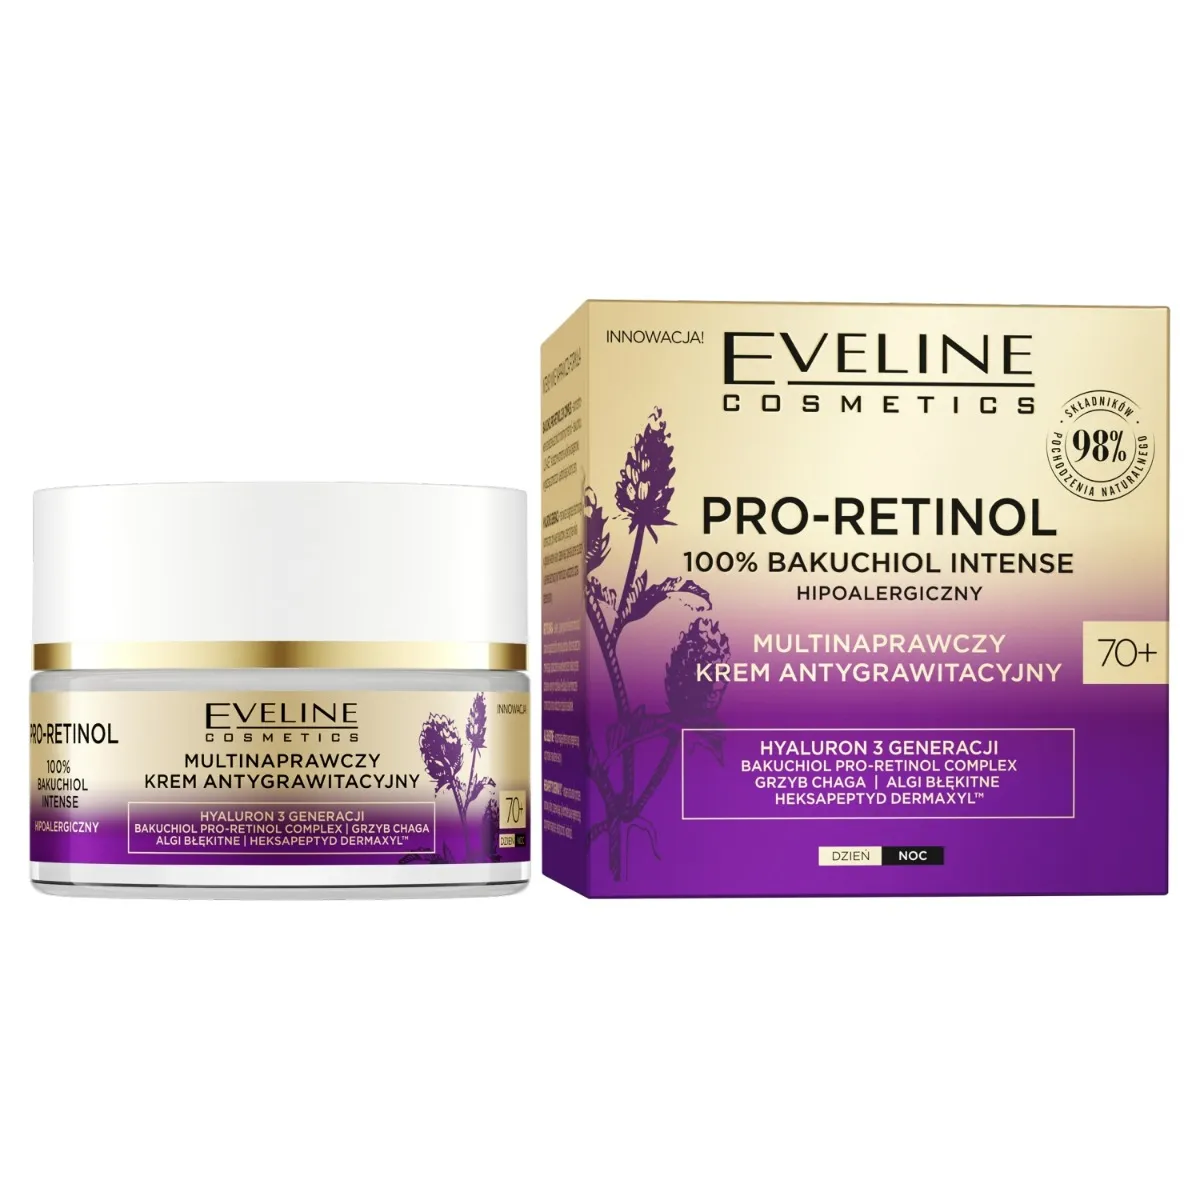 Eveline Cosmetics Organic Pro-Retinol 100% Bakuchiol multinaprawczy krem do twarzy antygrawitacyjny 70+, 50 ml